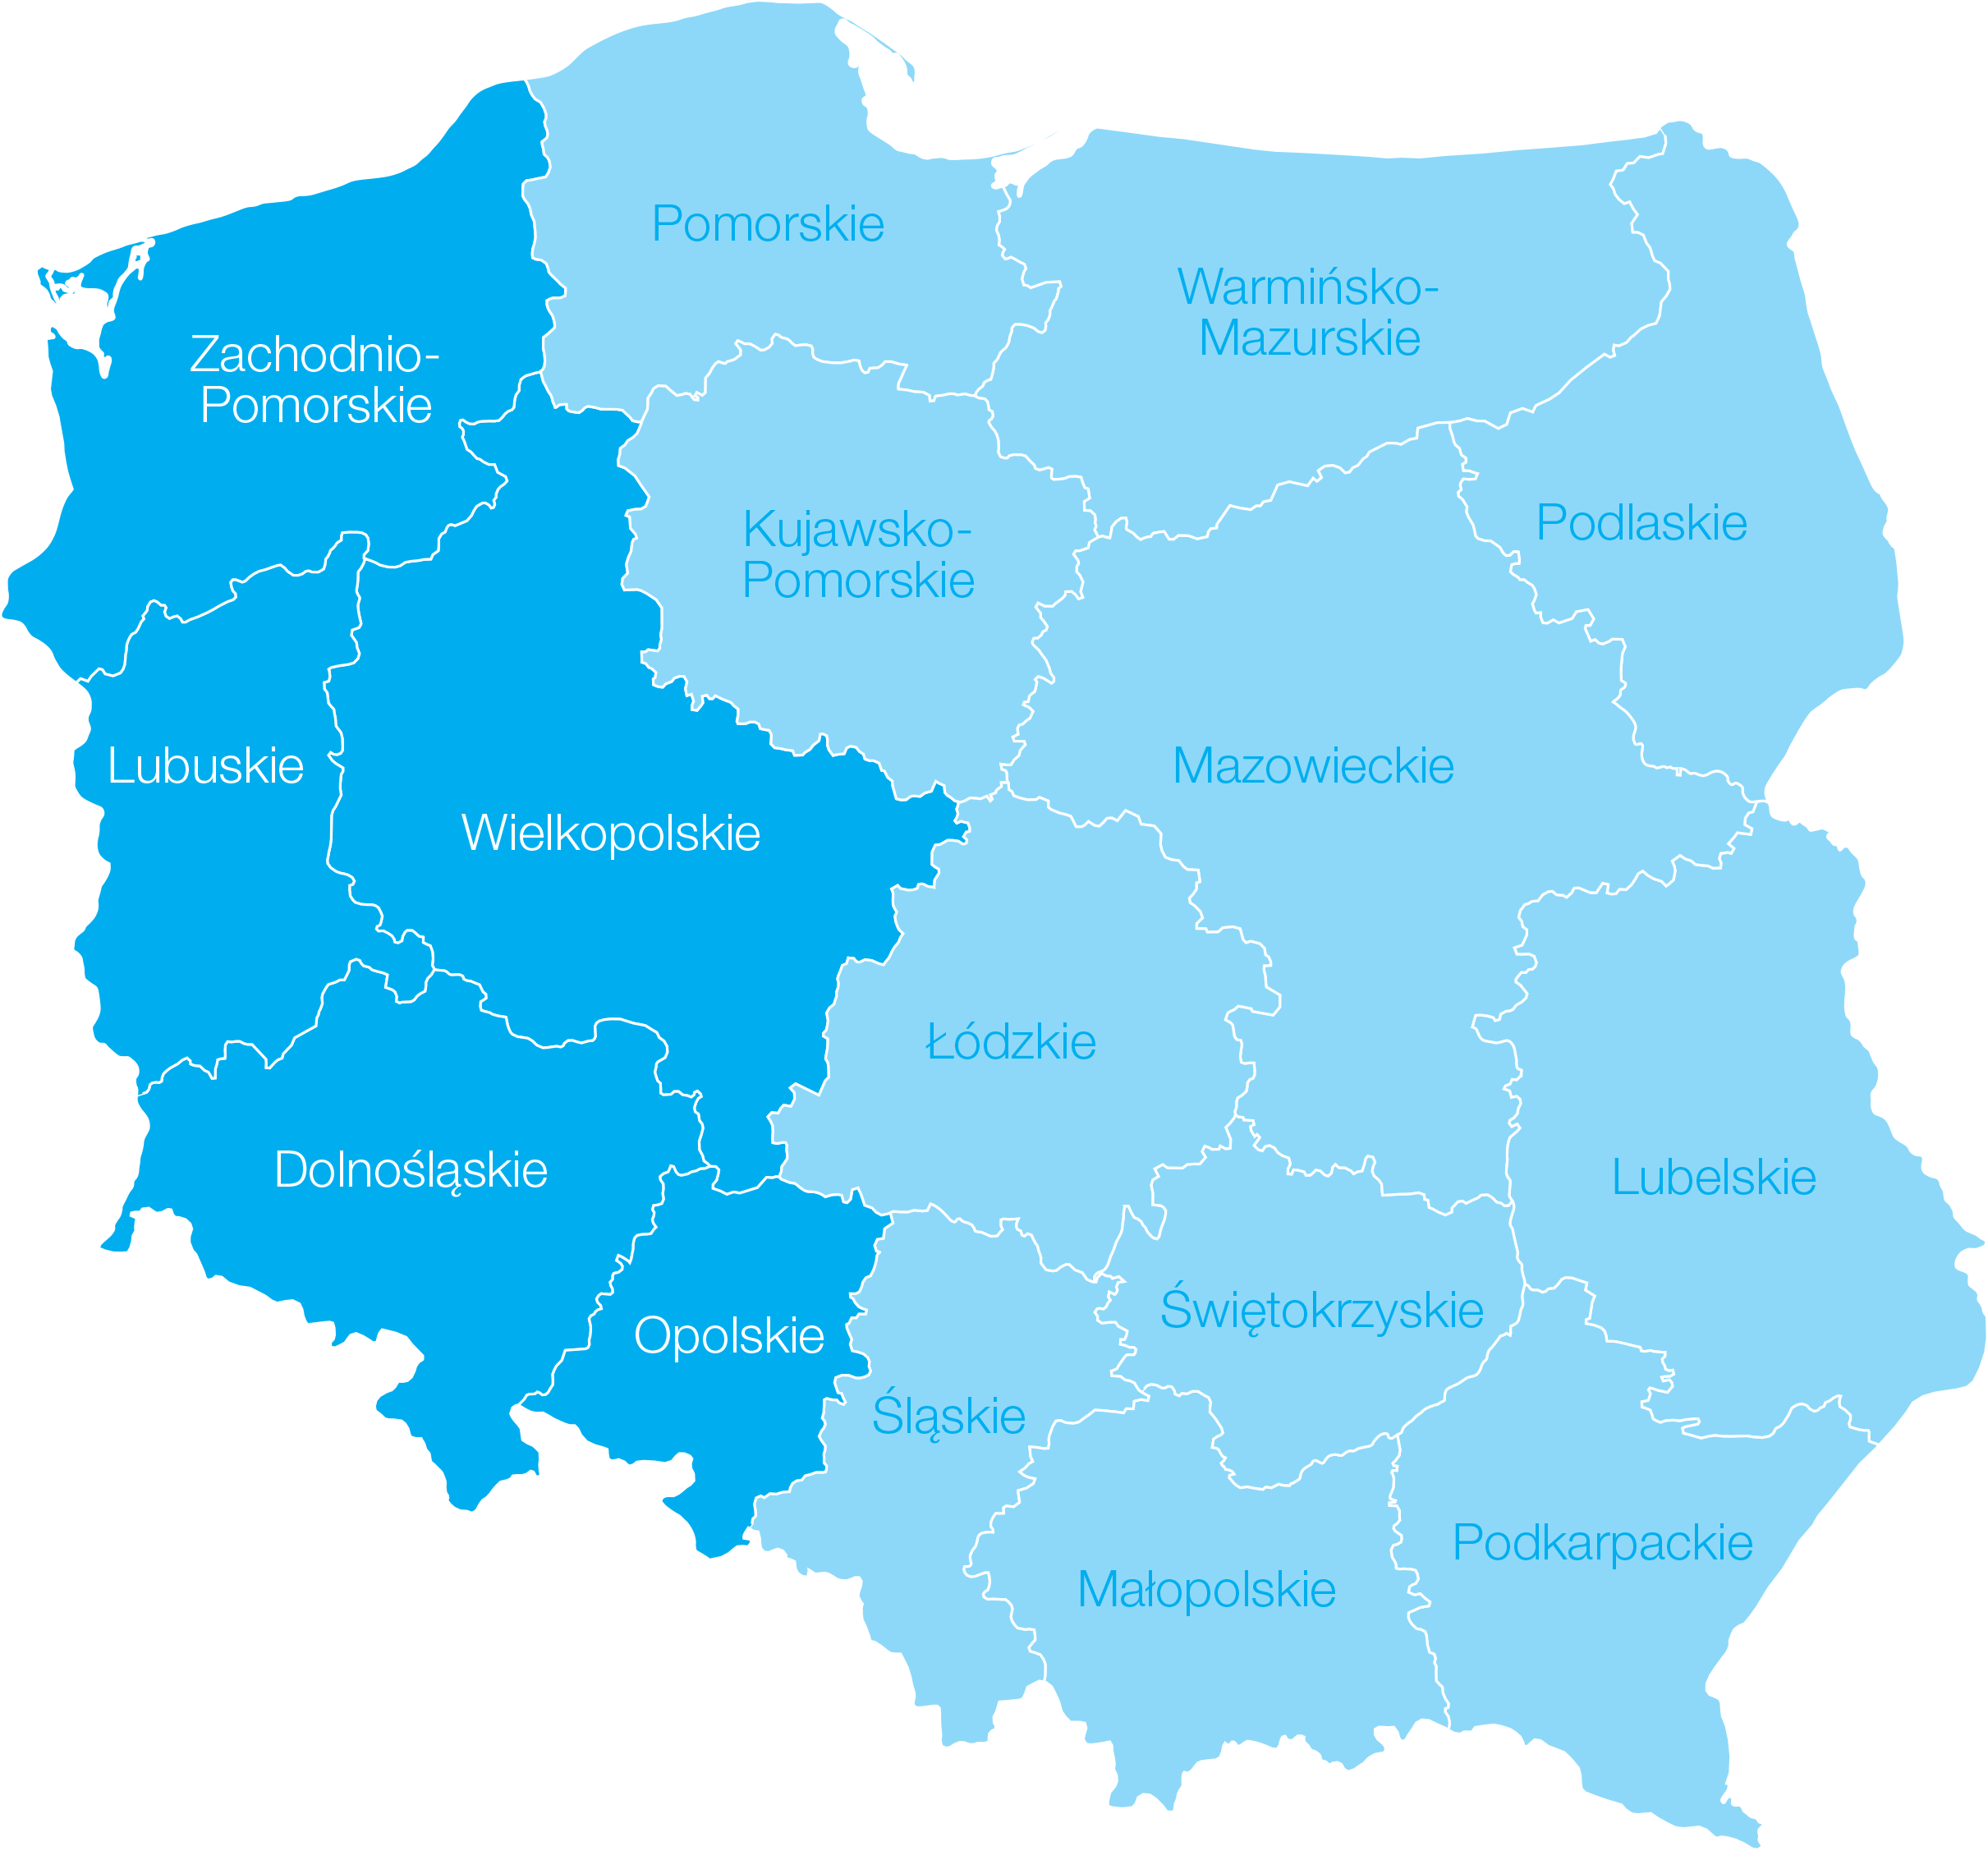 Opolskie, Dolnośląskie, Wielkopolskie, Lubuskie, Zachodnio